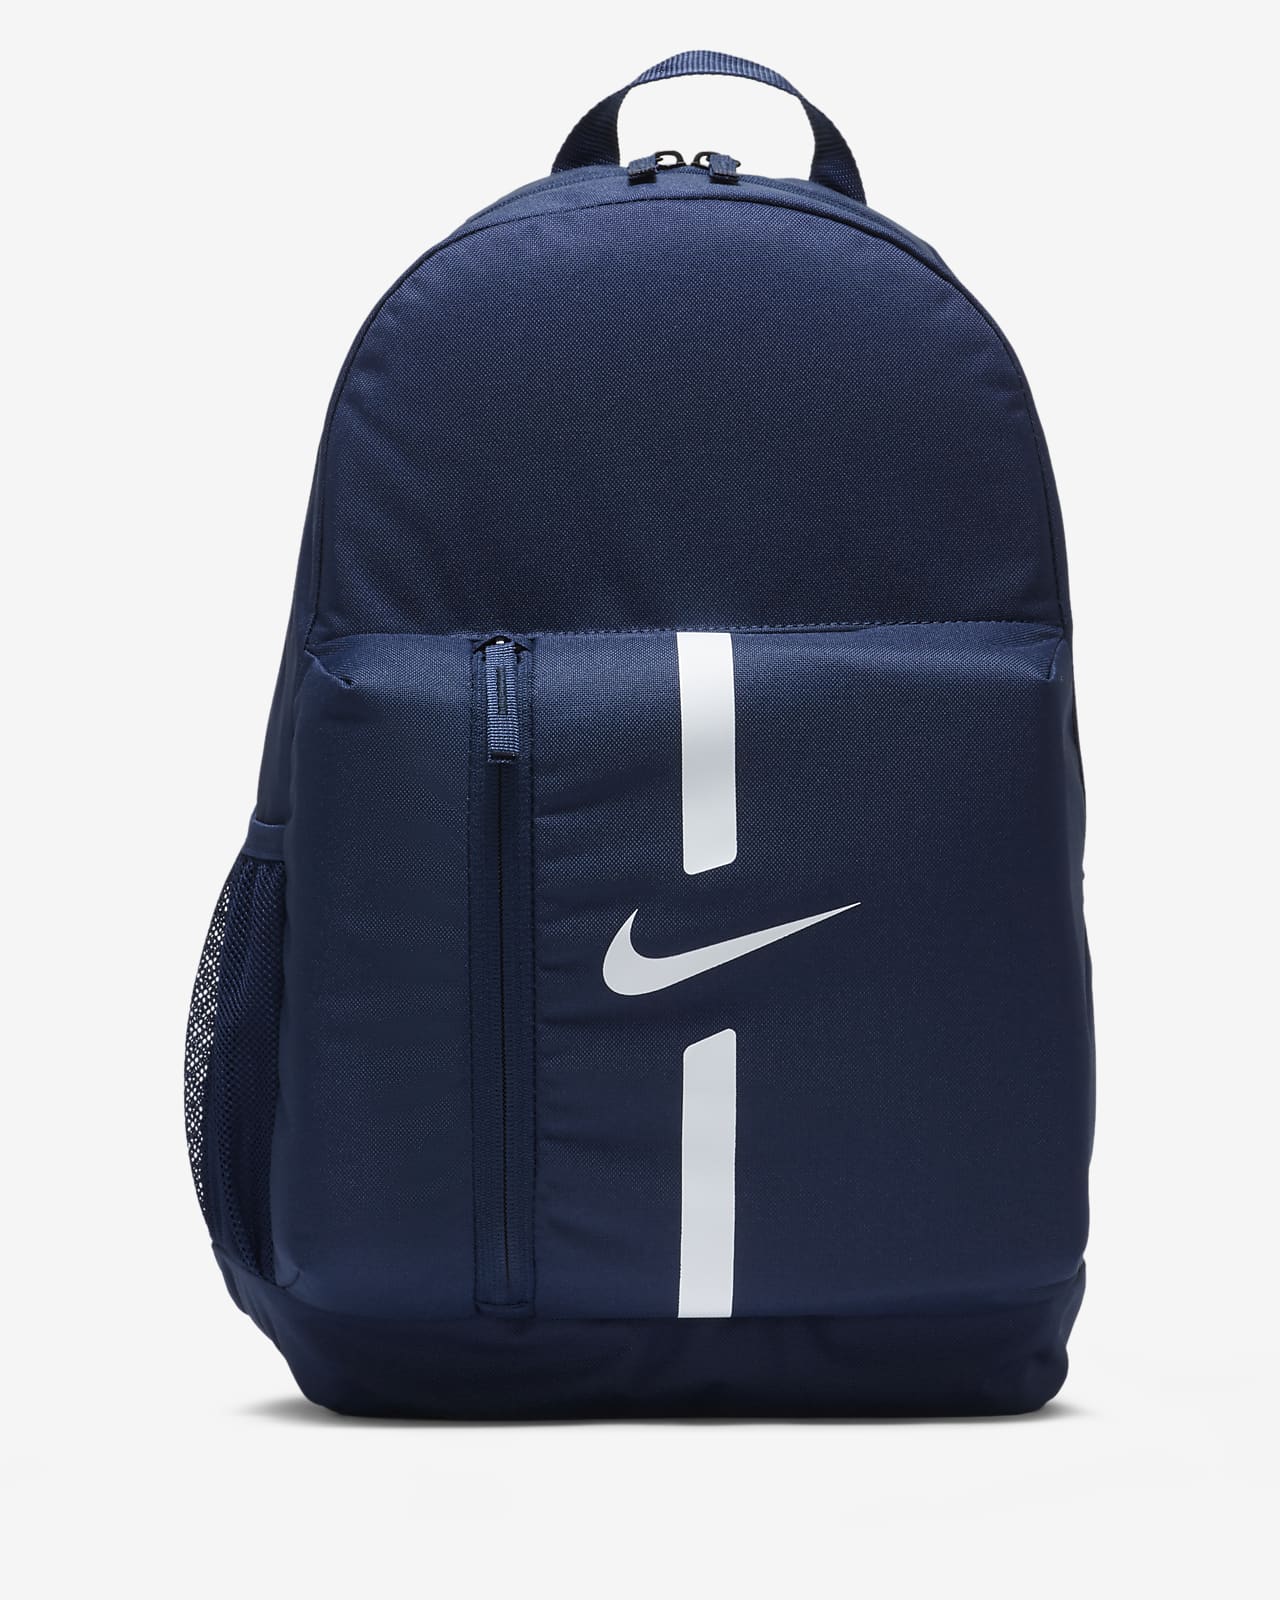 Nike Academy Team 兒童足球背包 (22 公升)